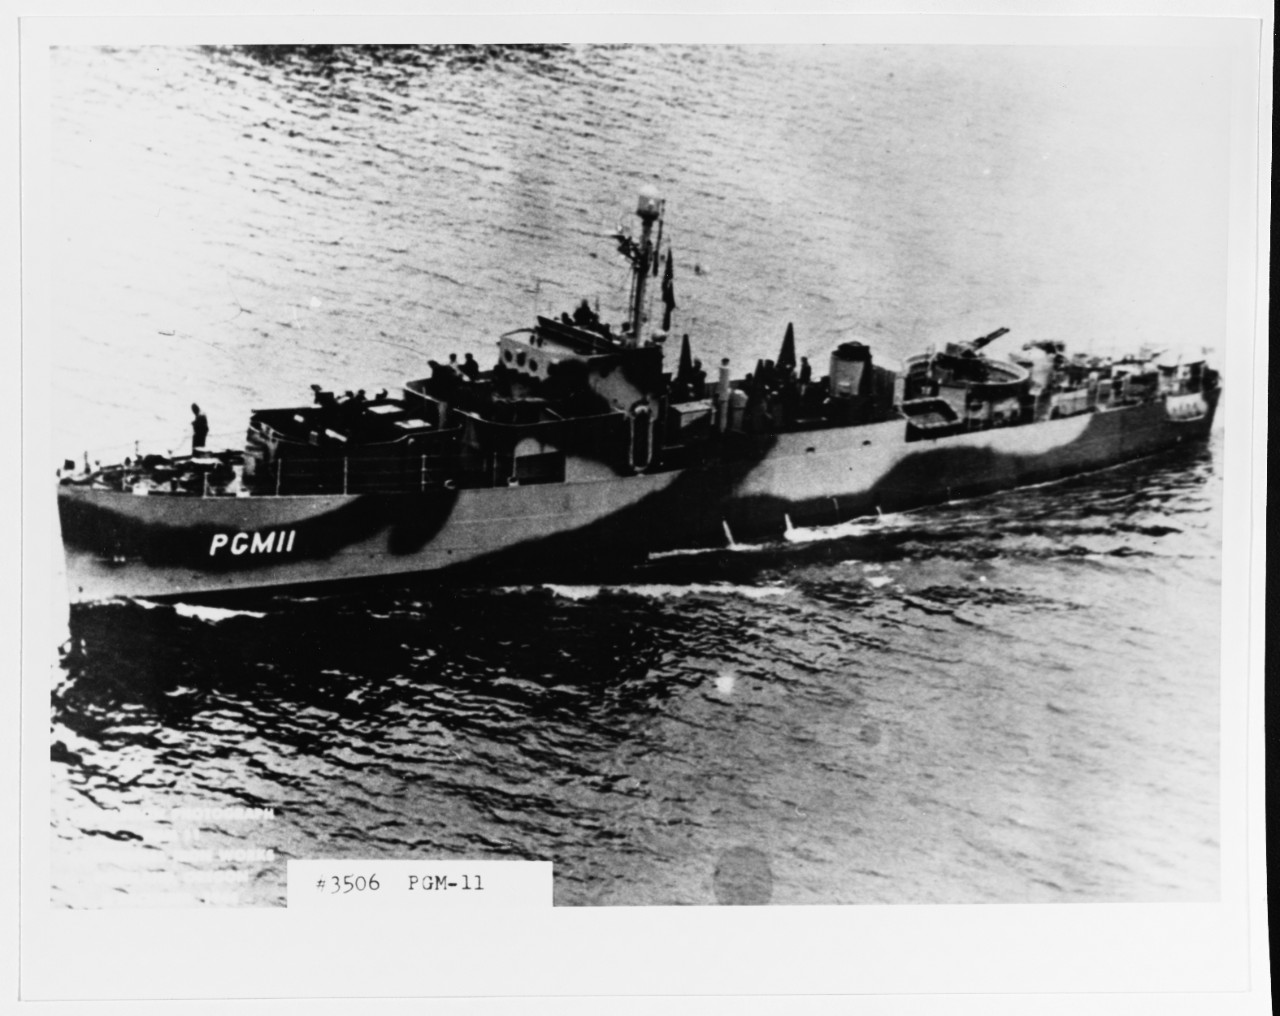 USS PGM-11